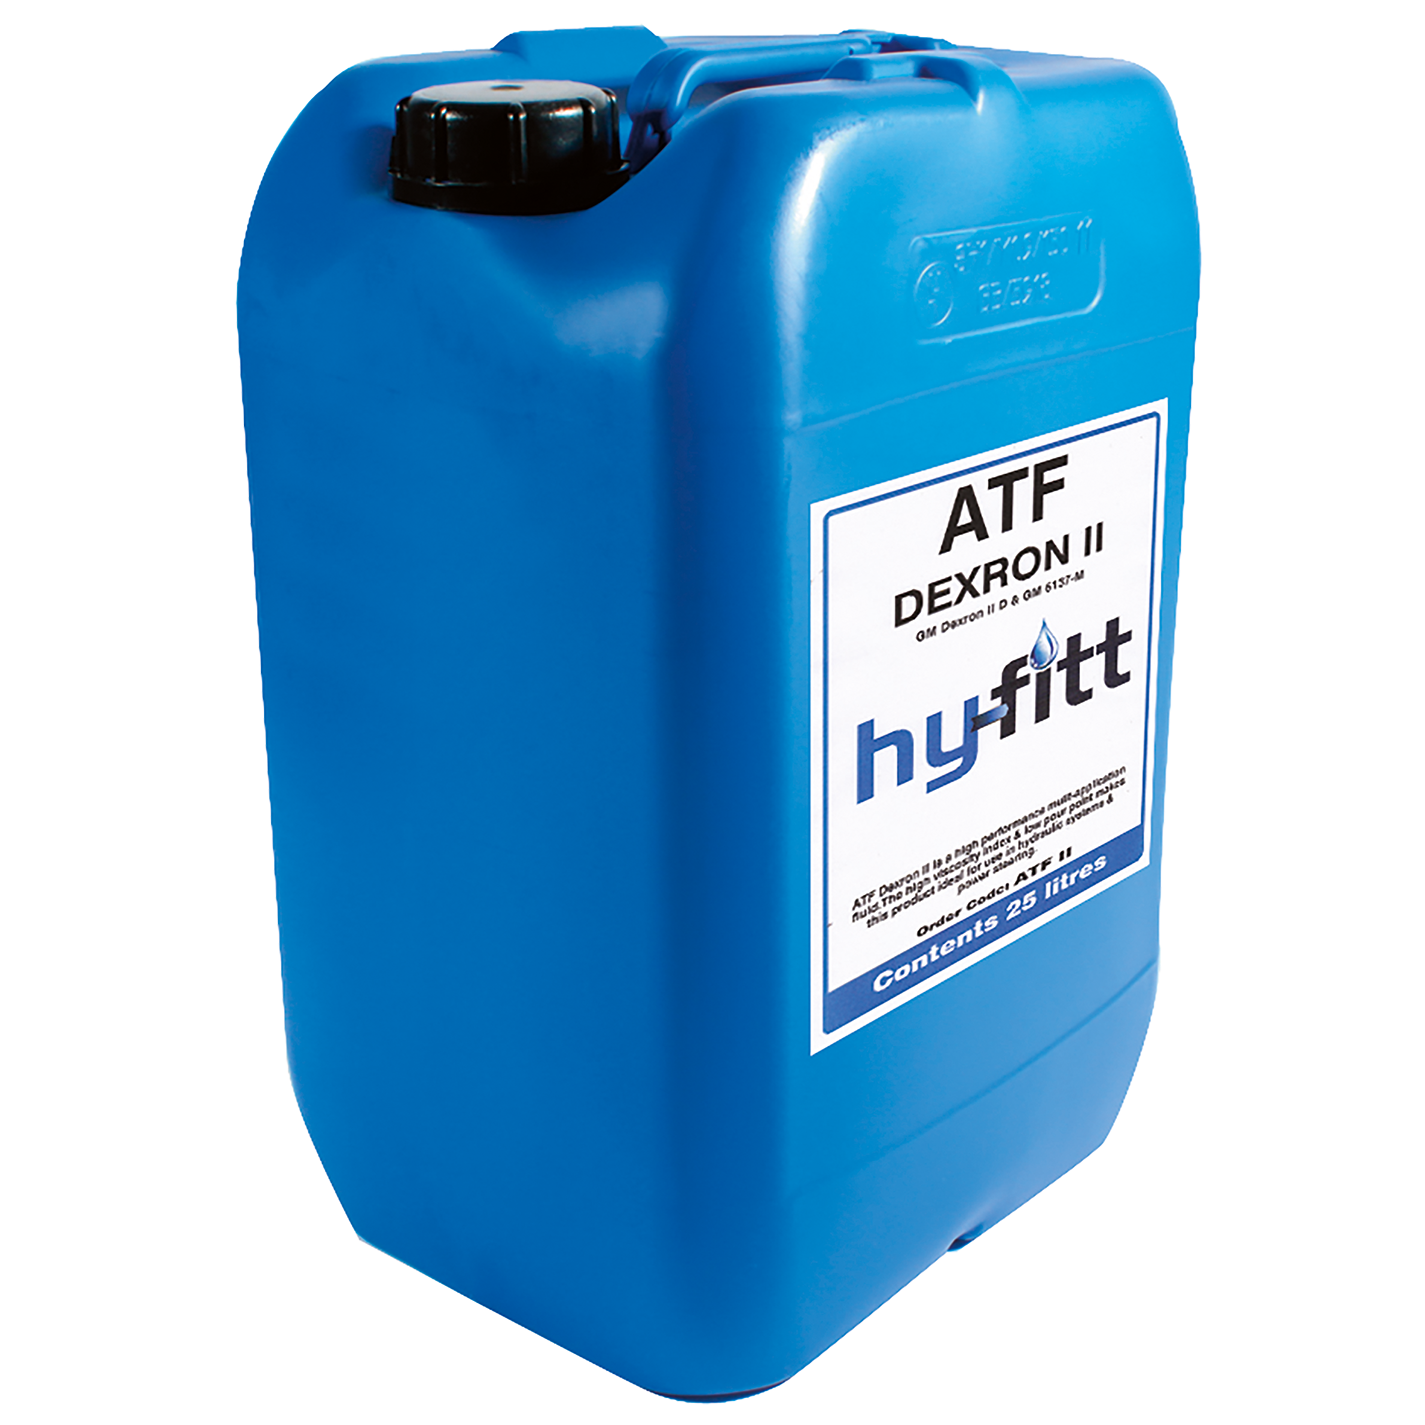 Hydraulic Oil & Fluid ATF Dexron ll Drum